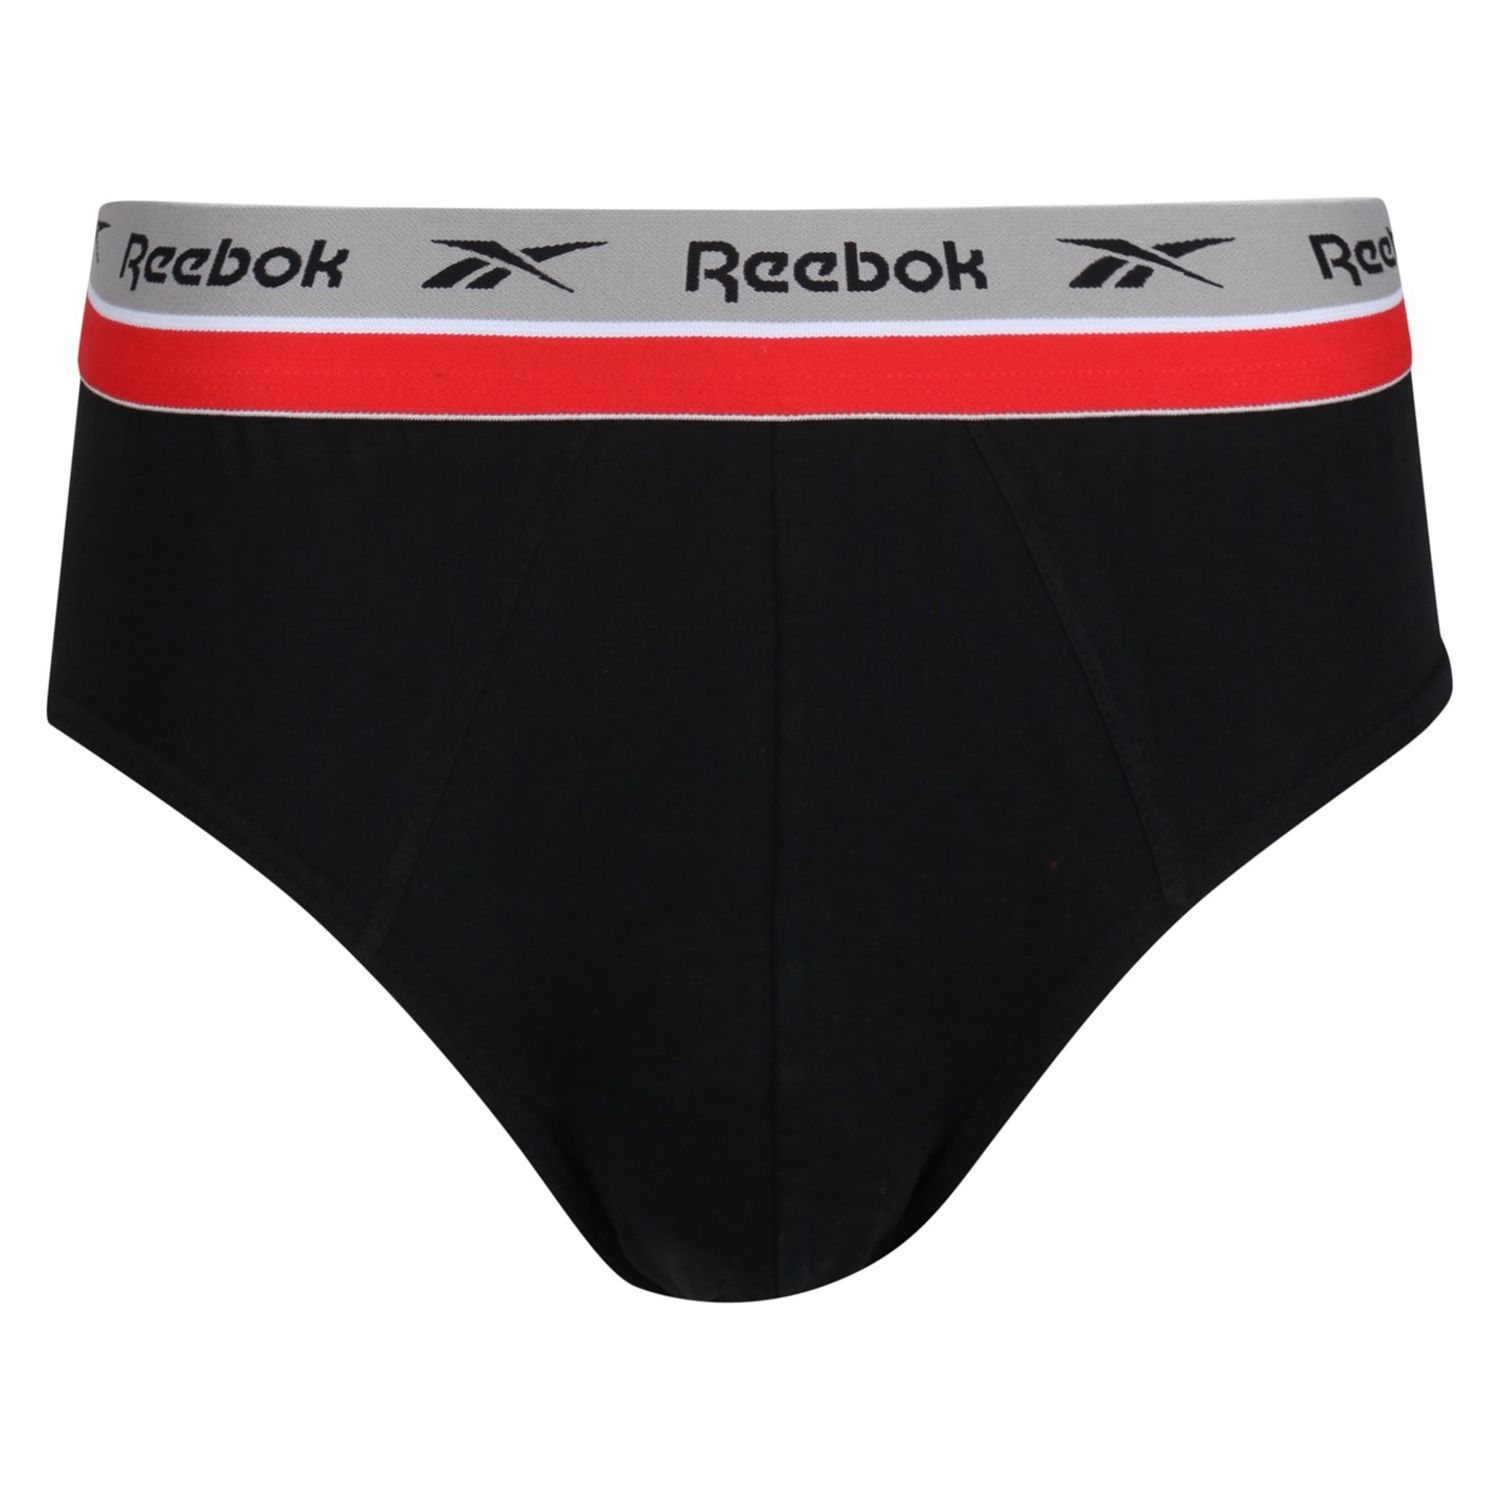 Reebok 3 Pack Wiggins Briefs Mens Gents Underwear Underclothes Lightweight